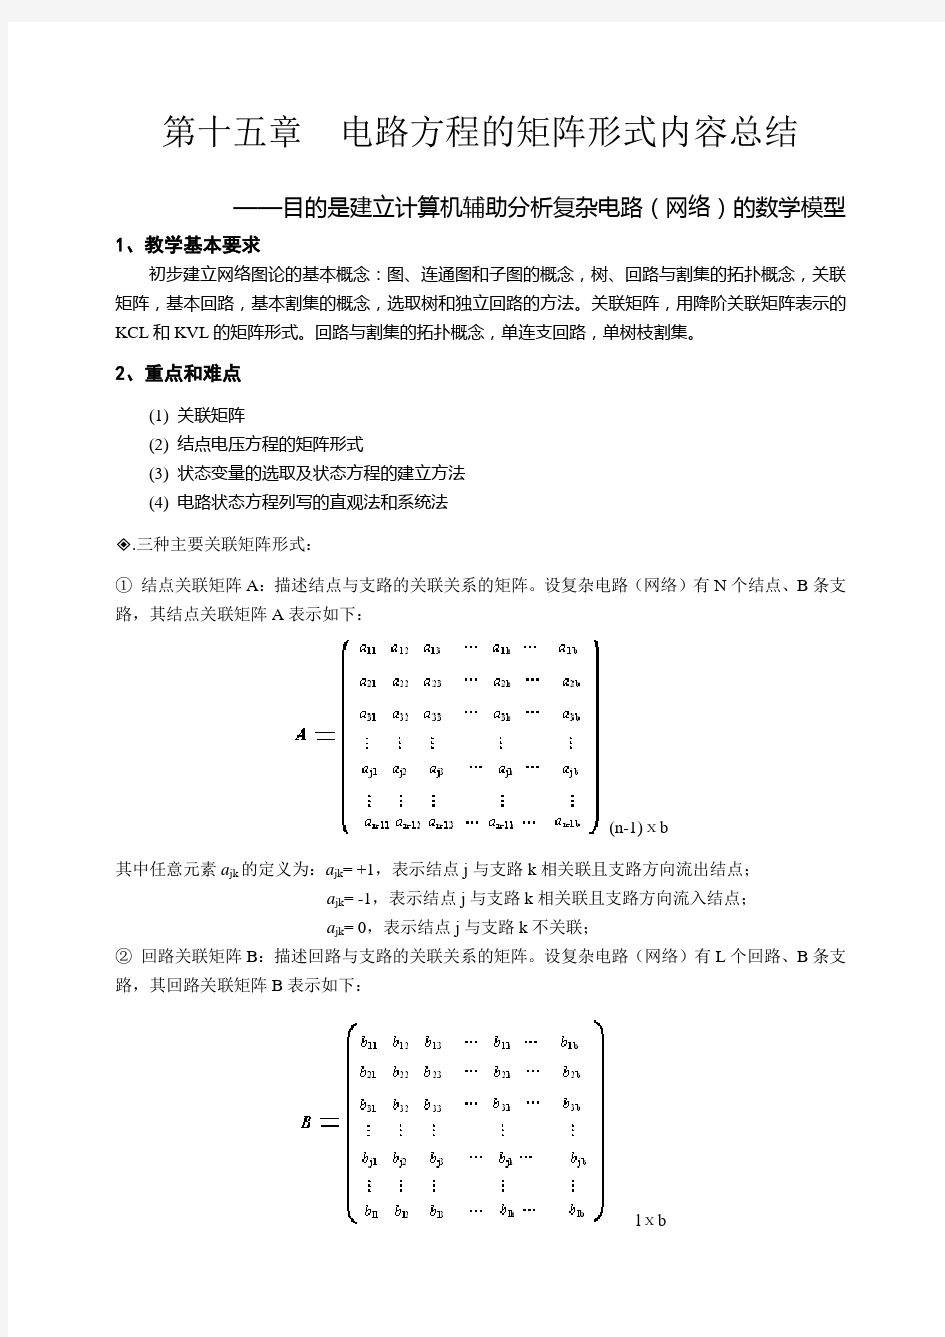 天津理工电路习题及答案  第十五章  电路方程的矩阵形式